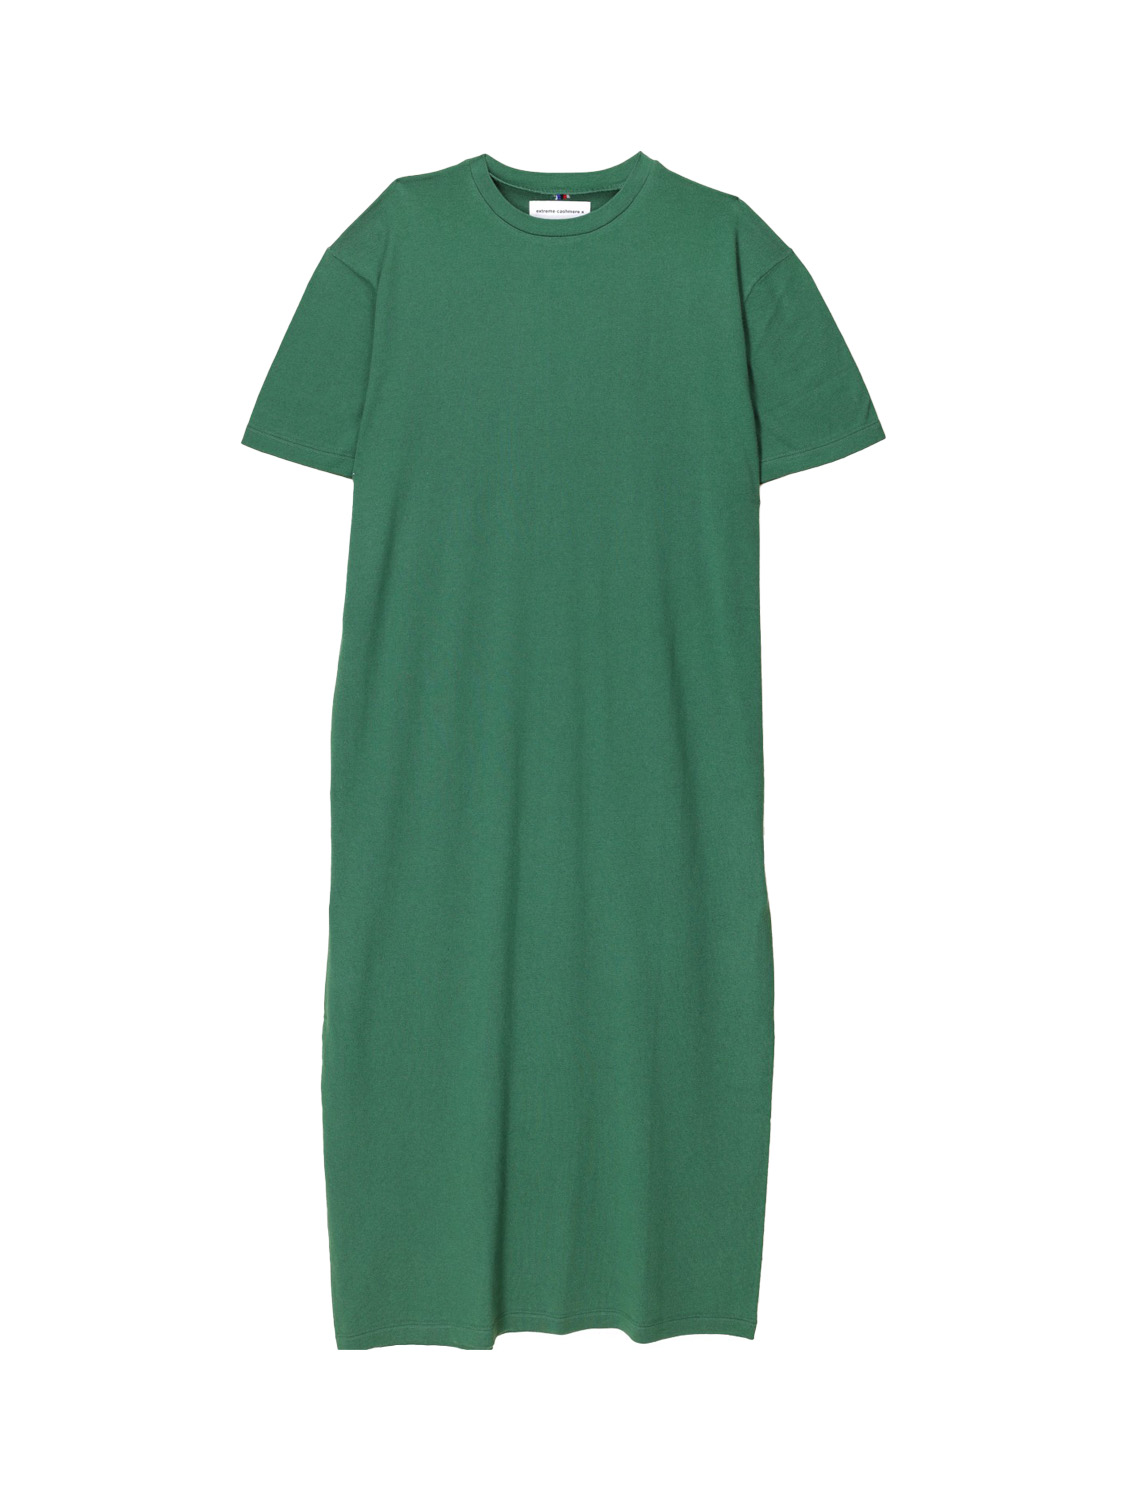 Extreme Cashmere N°321 Kris - Abito T-shirt oversize in misto cashmere e cotone  verde Taglia unica